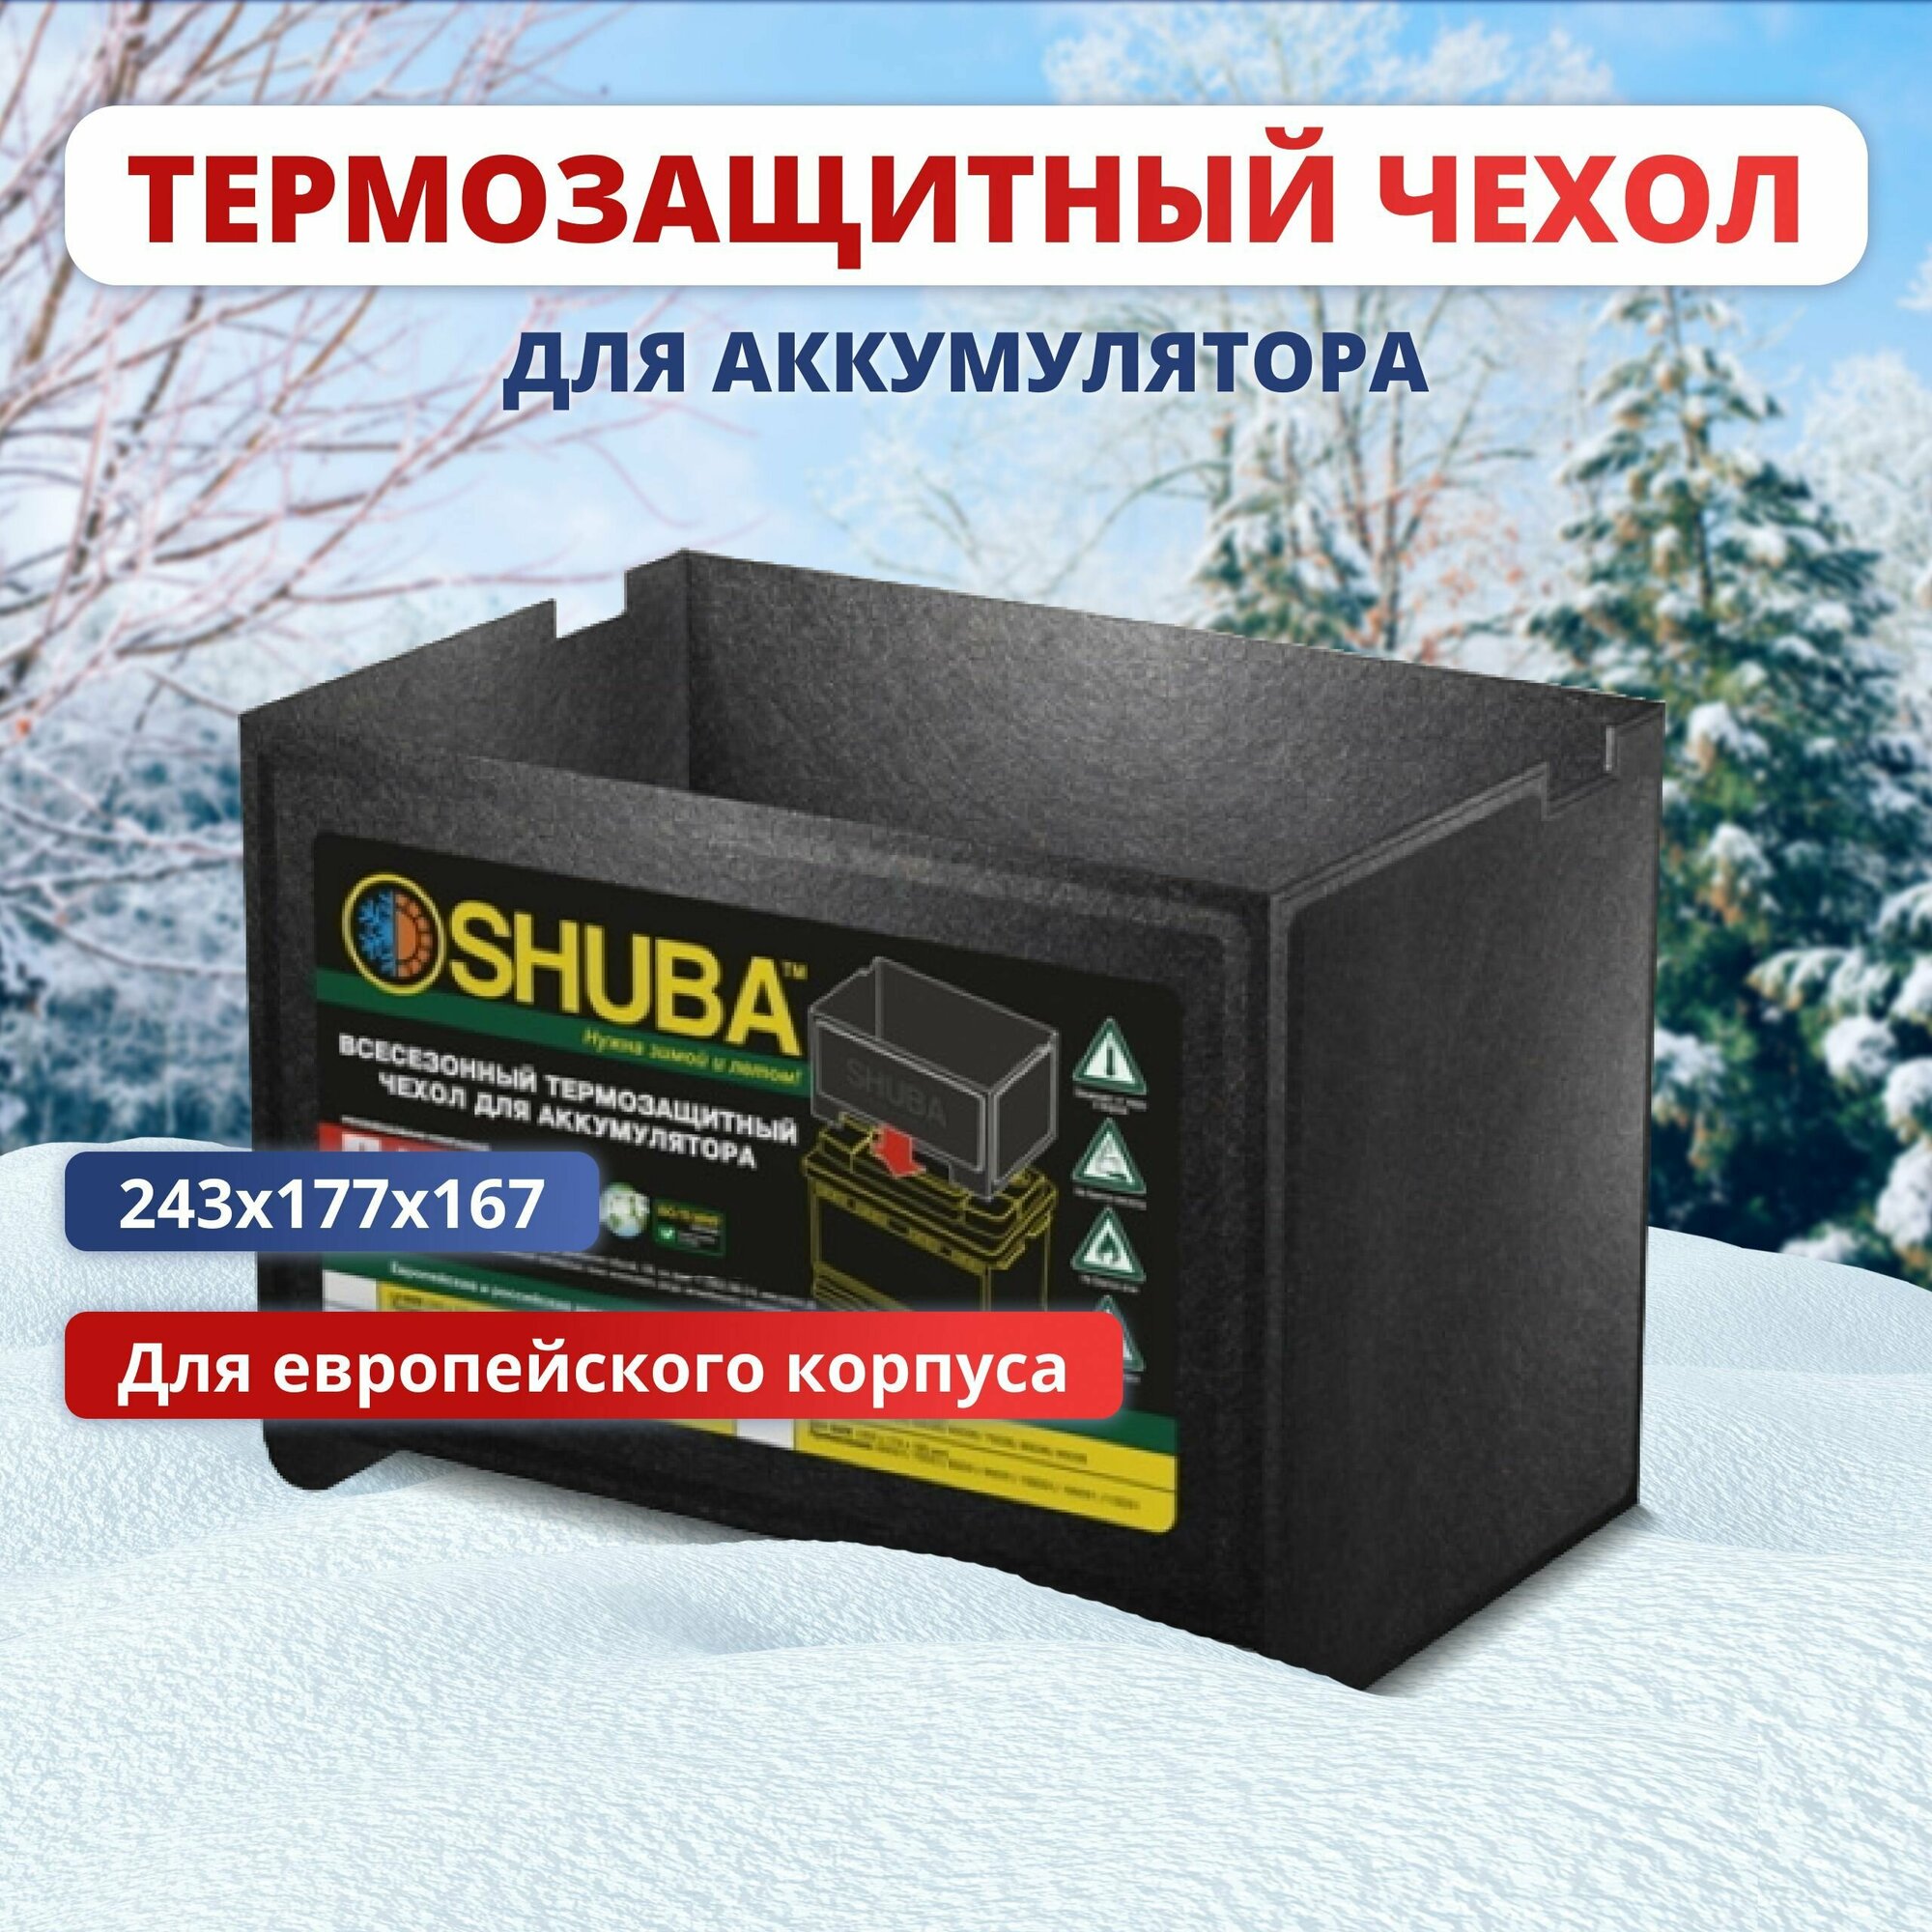 Всесезонный термозащитный чехол для аккумулятора автомобиля SHUBA L2 термокейс утеплитель чехол на акб авто 243x177x167